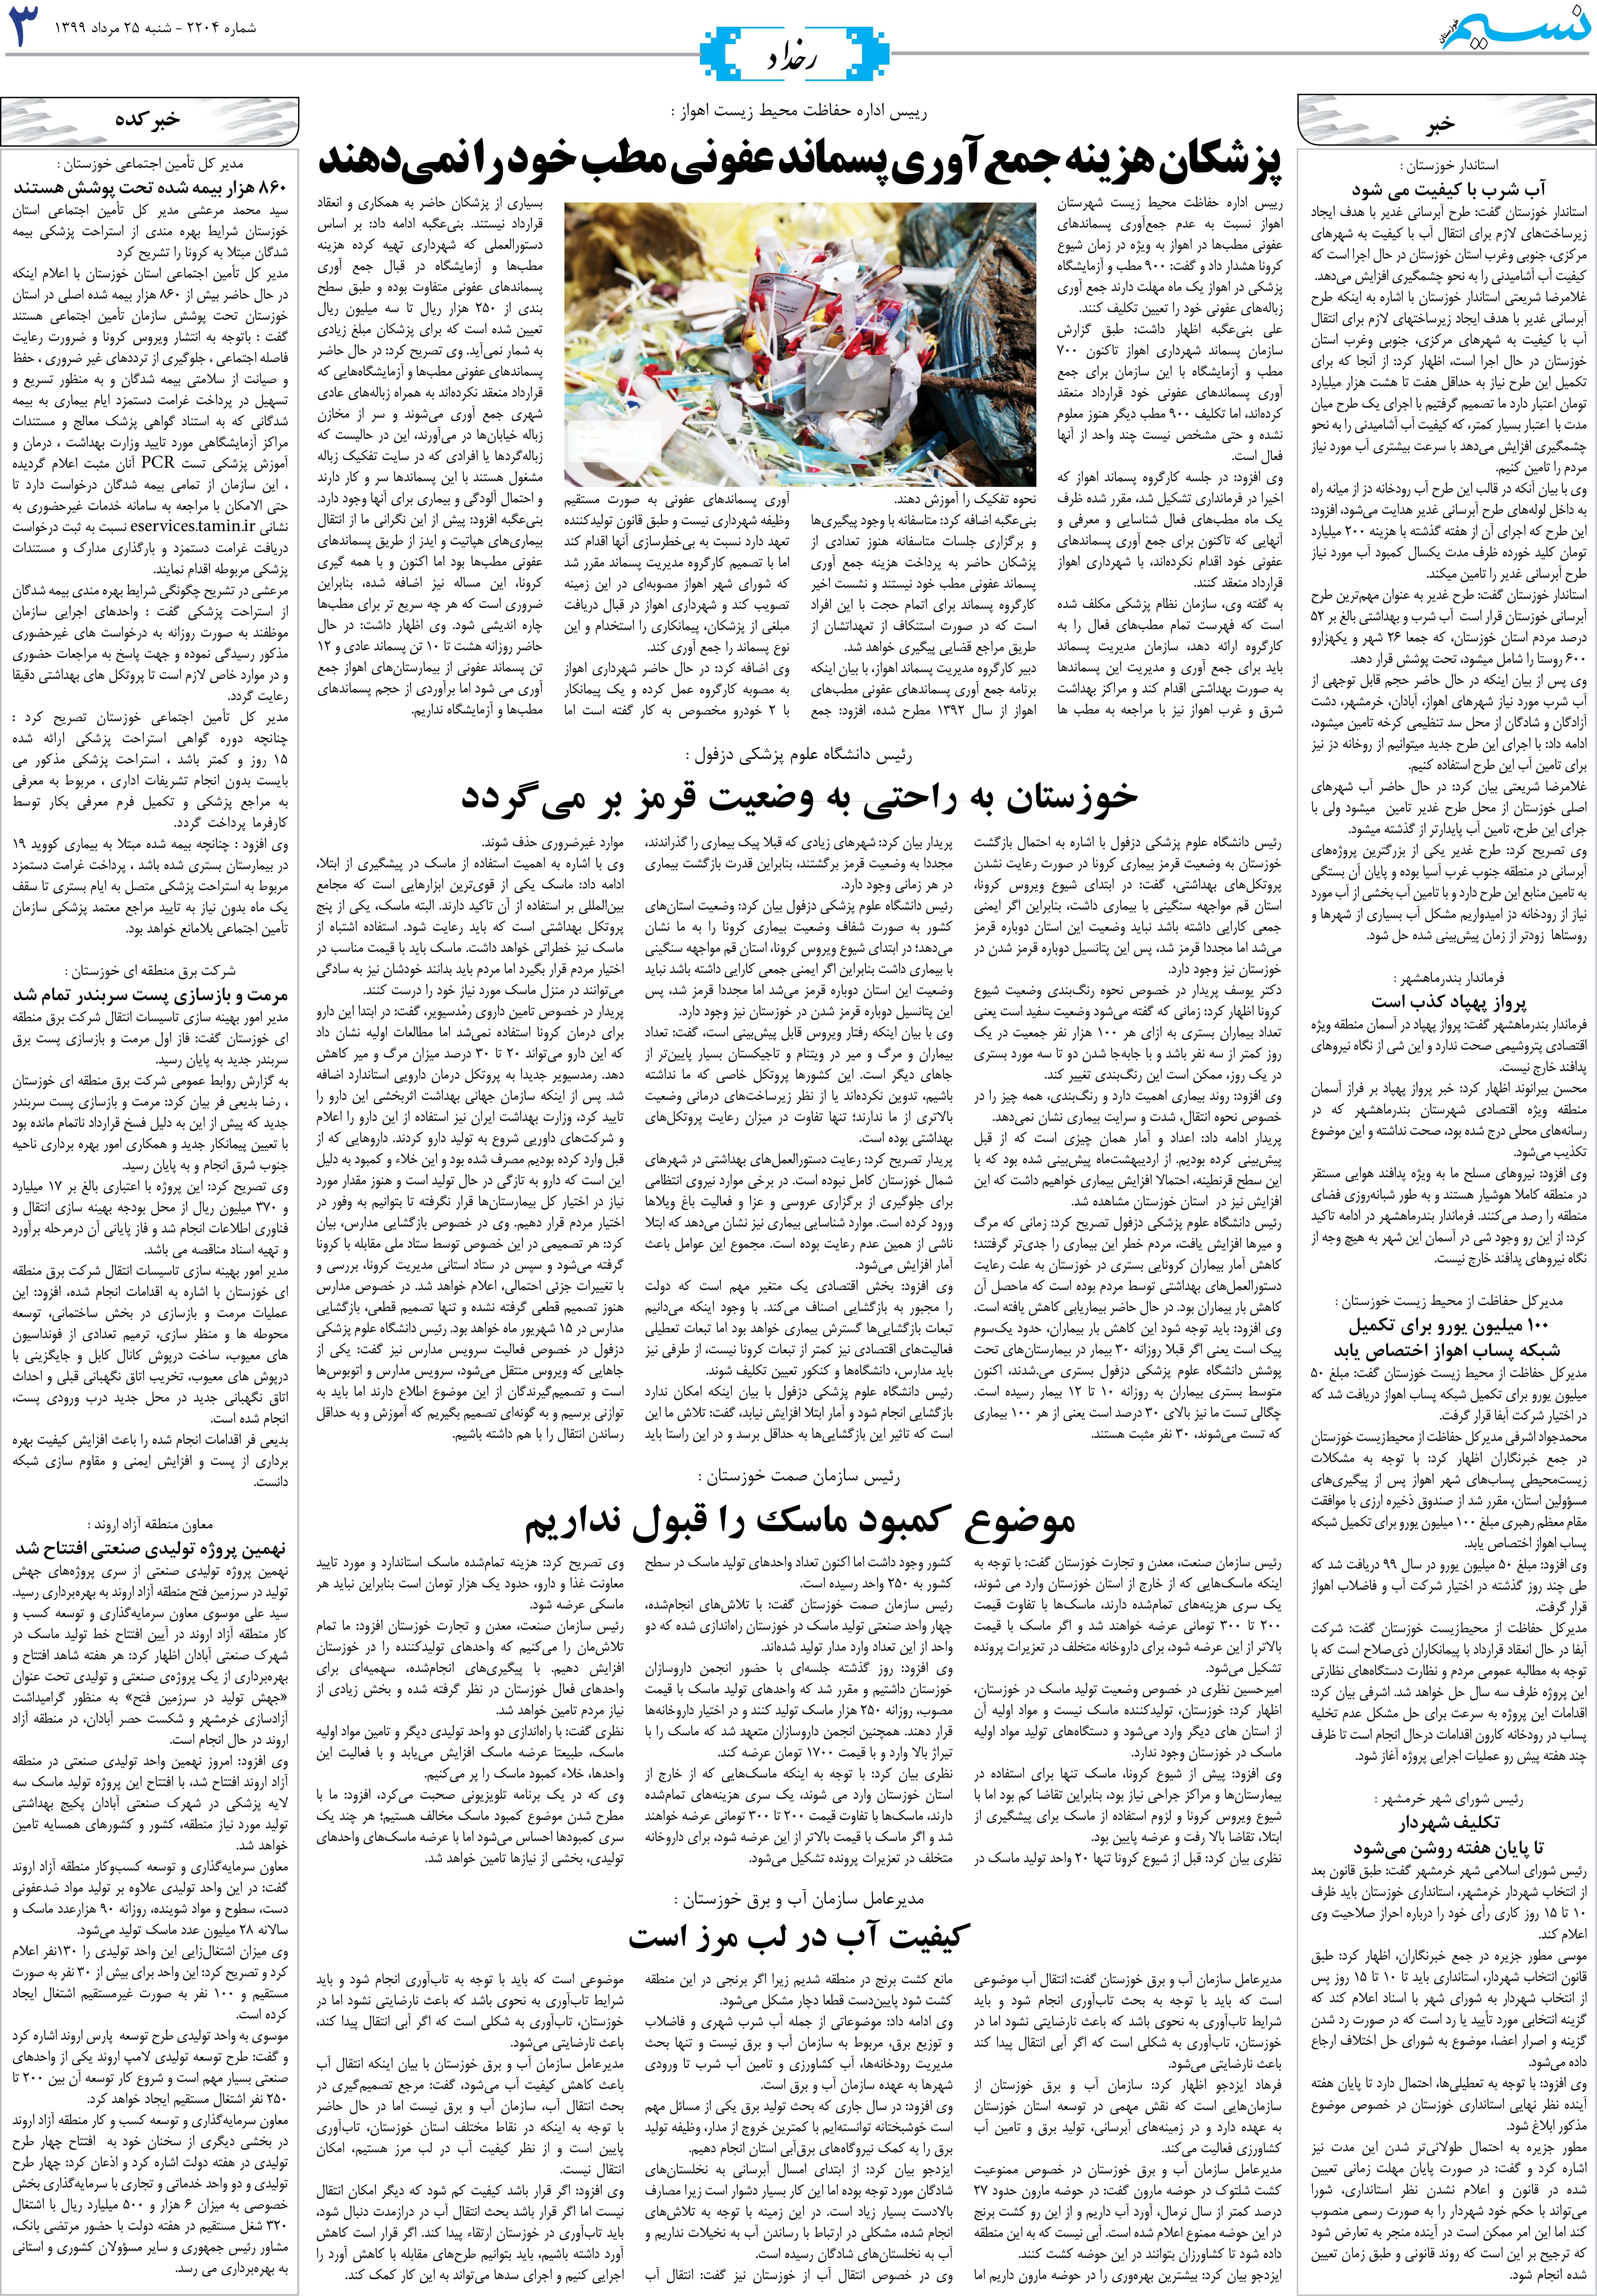 صفحه رخداد روزنامه نسیم شماره 2204